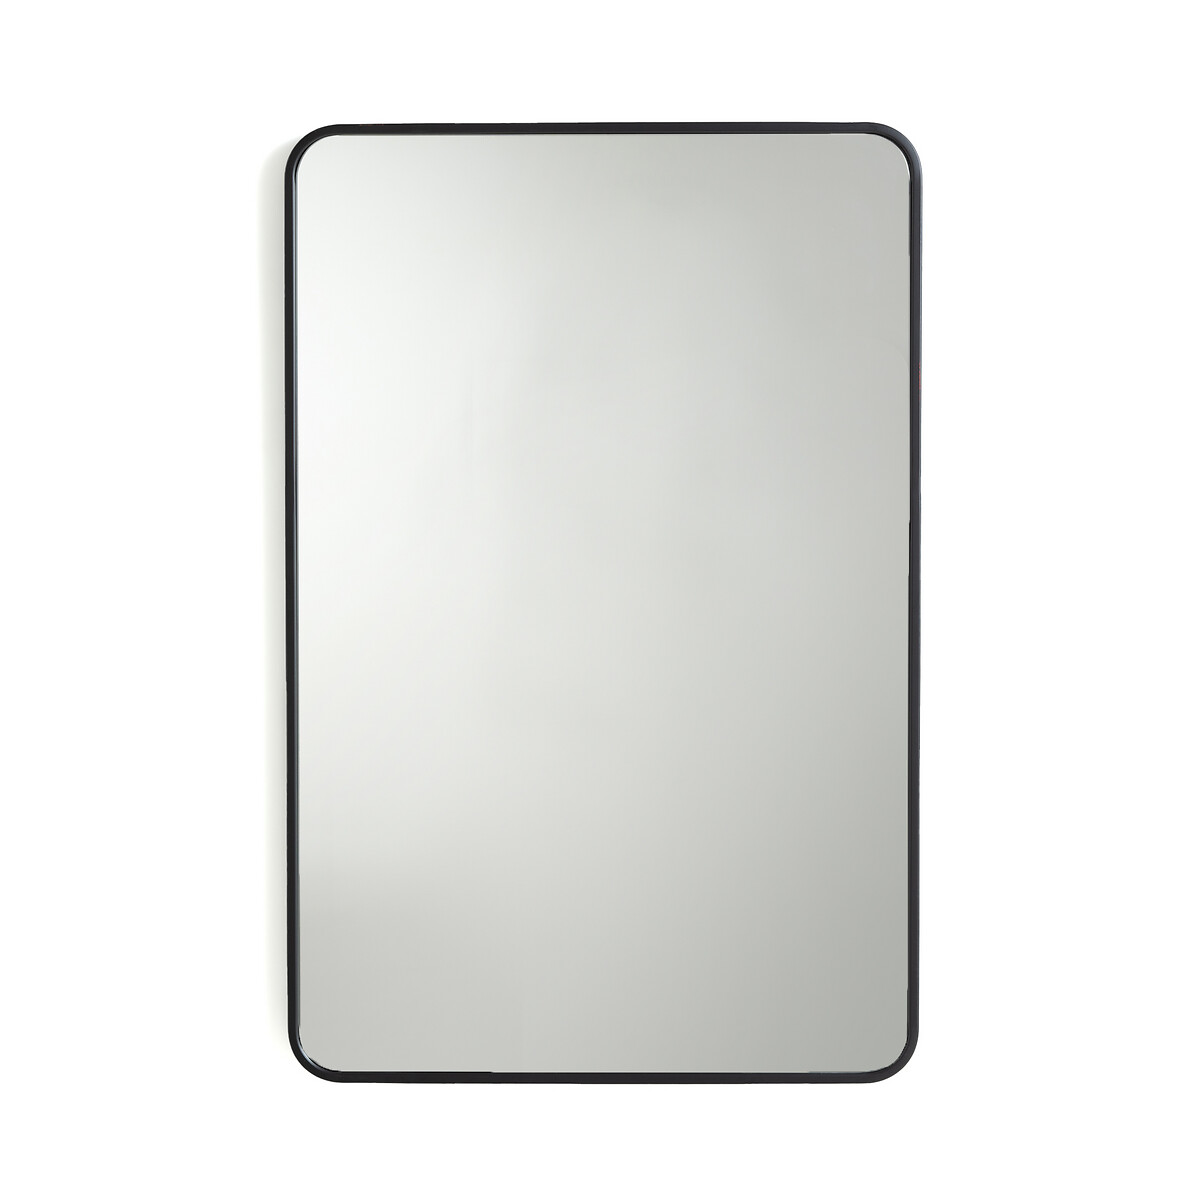 Зеркало с отделкой металлом В90 см Iodus единый размер черный зеркало круглое с отделкой металлом 90 см iodus единый размер черный